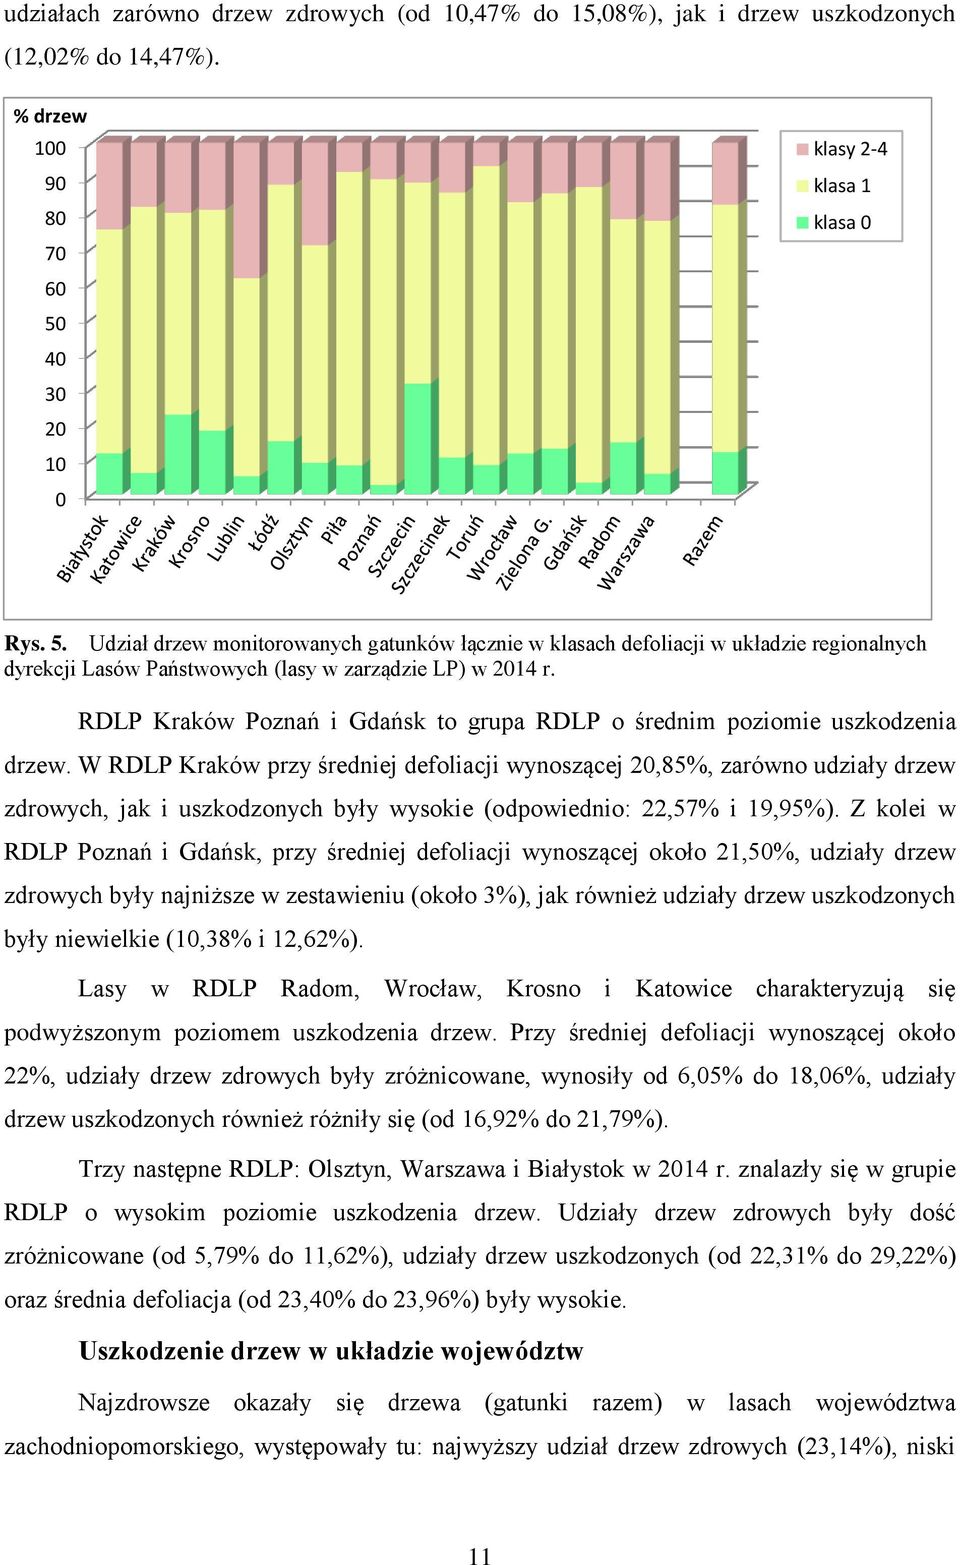 RDLP Kraków Poznań i Gdańsk to grupa RDLP o średnim poziomie uszkodzenia drzew.